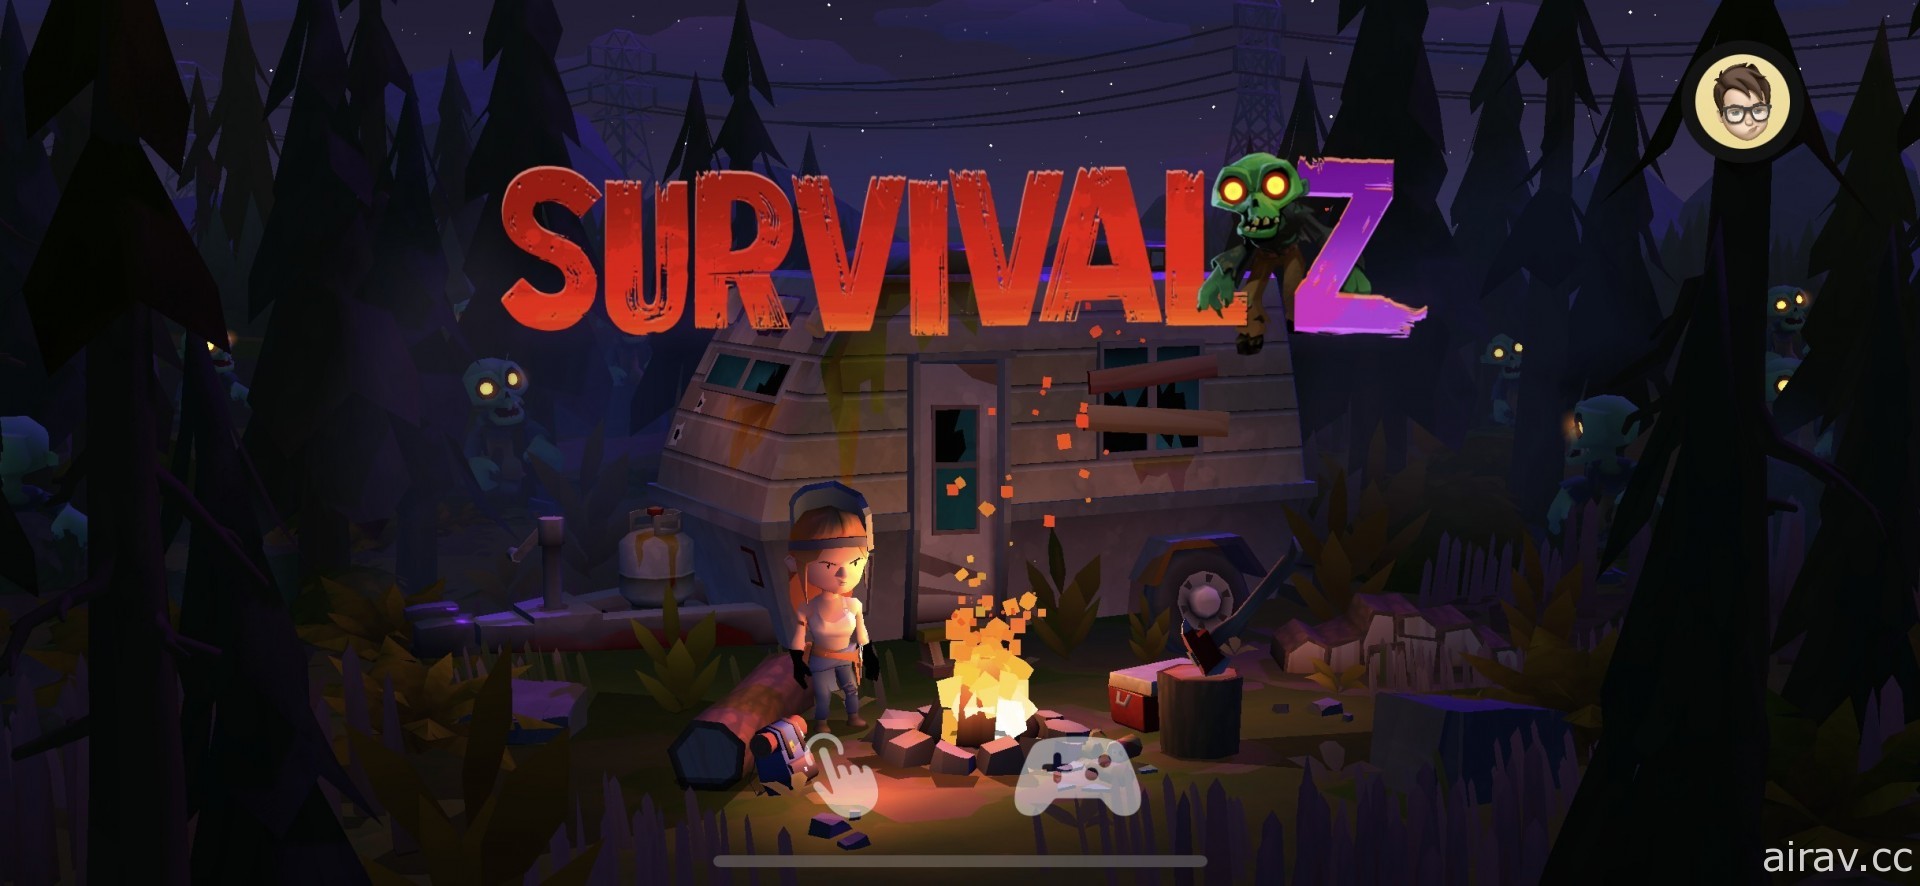 【試玩】殭屍塔防遊戲《Survival Z》扮演僅存的倖存者抵禦殭屍拯救世界